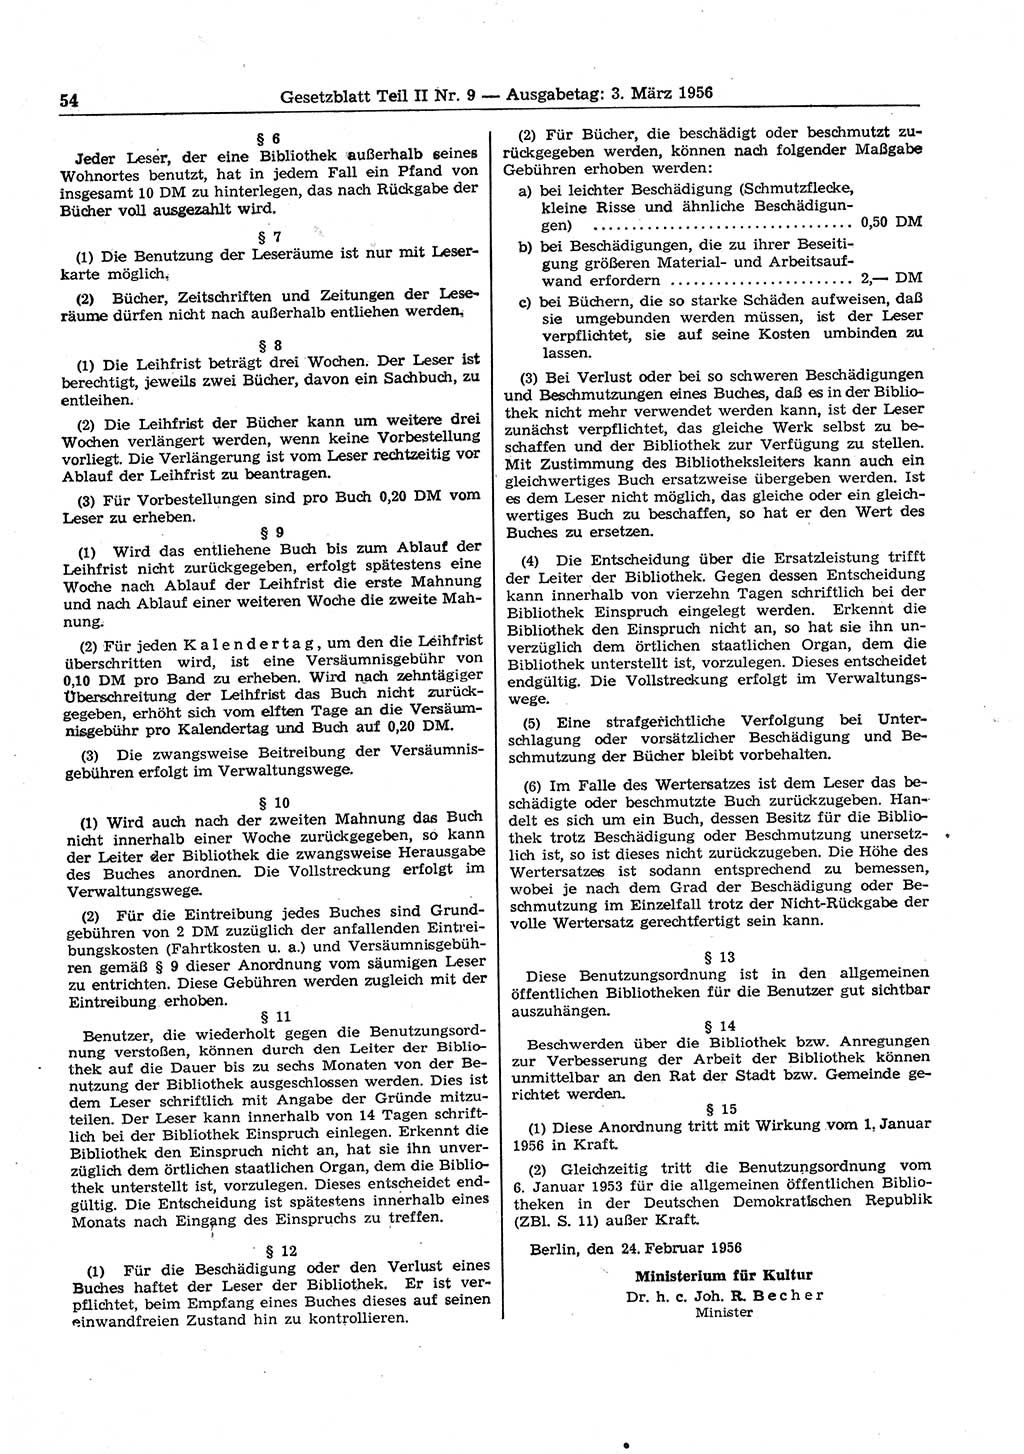 Gesetzblatt (GBl.) der Deutschen Demokratischen Republik (DDR) Teil ⅠⅠ 1956, Seite 54 (GBl. DDR ⅠⅠ 1956, S. 54)